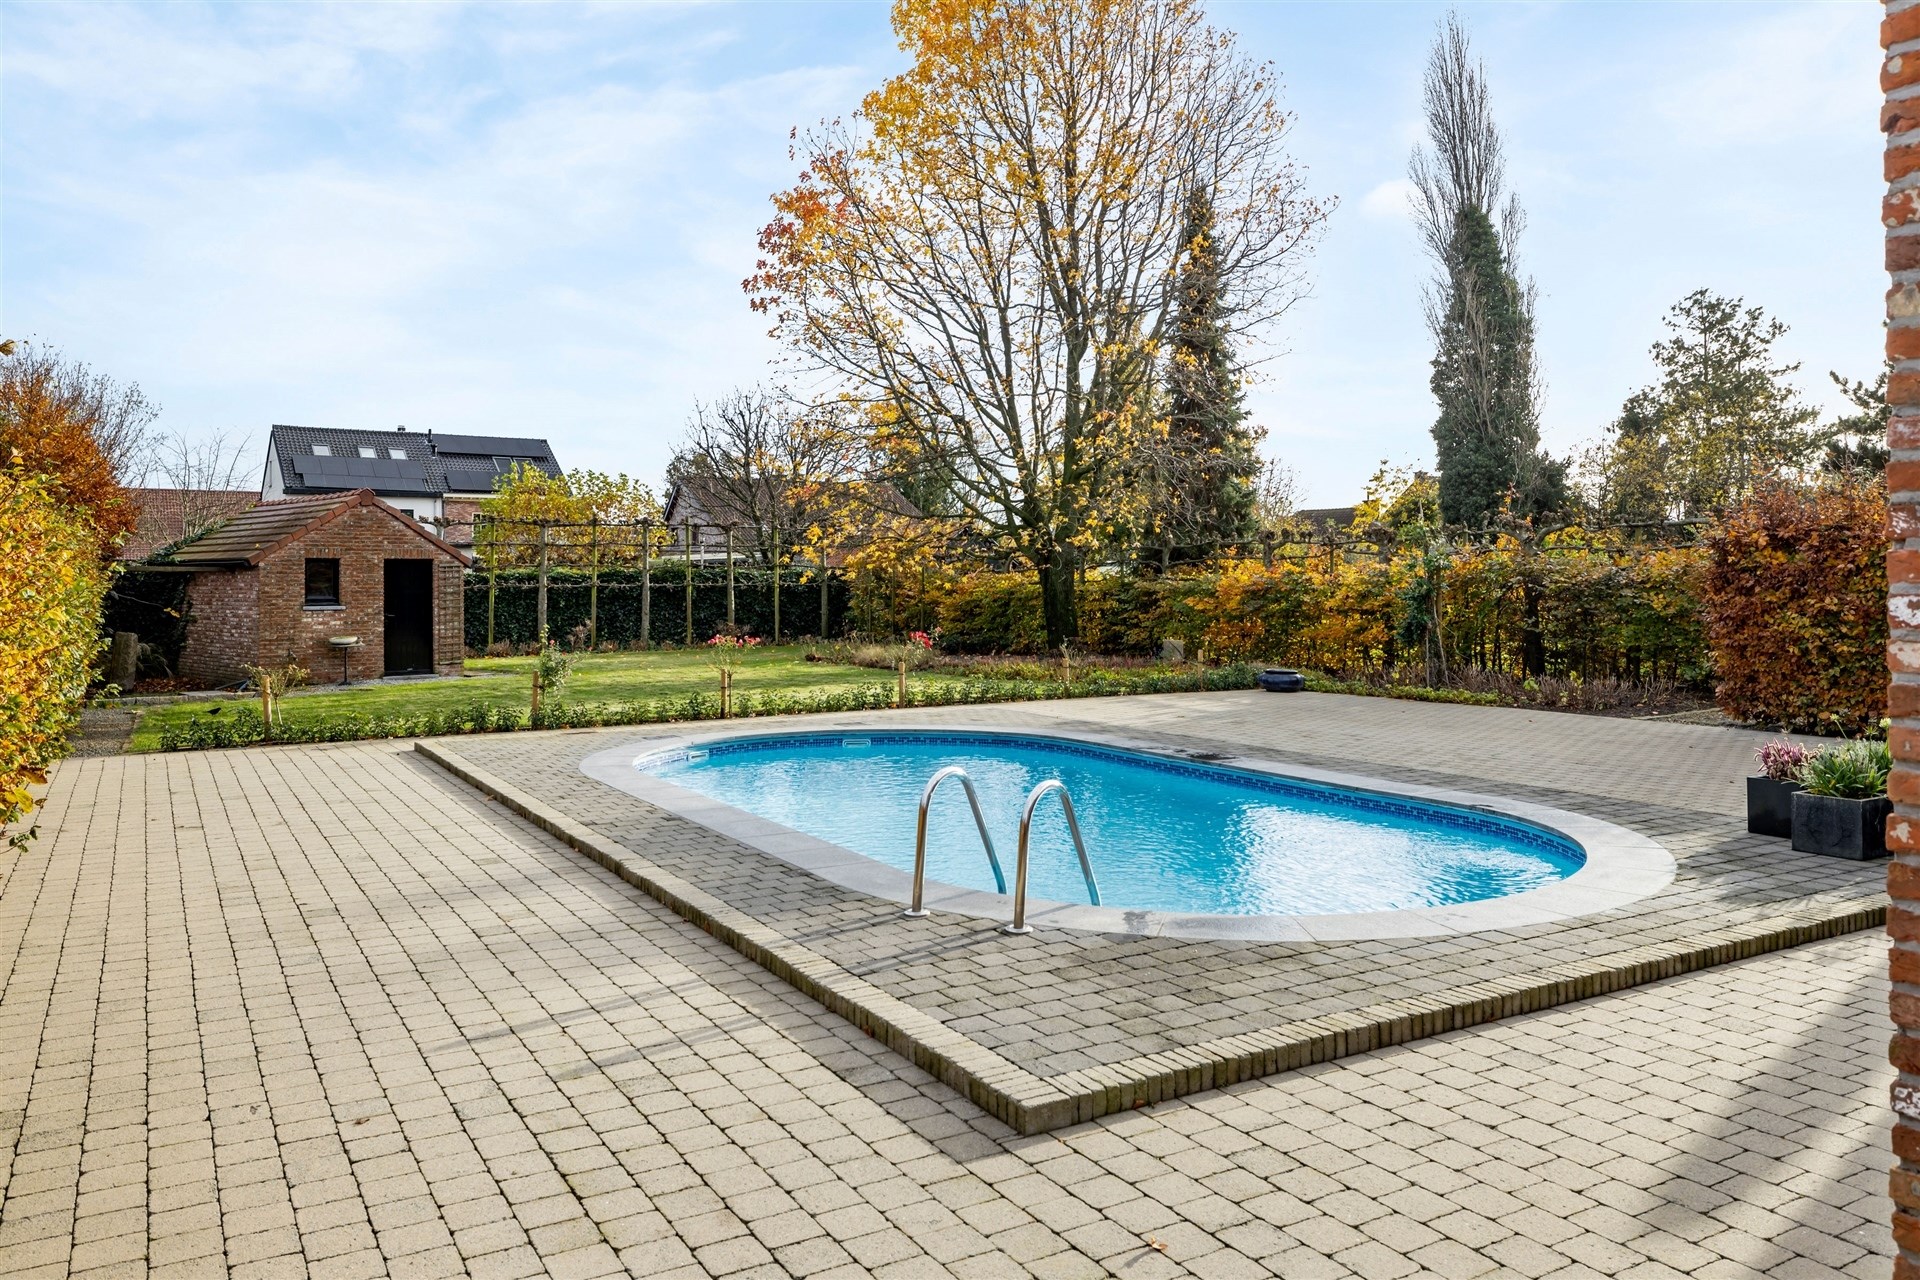 Karaktervolle gezinswoning met dubbele garage en zwembad op een uitstekende locatie in De Klinge (1.100m²) foto 4